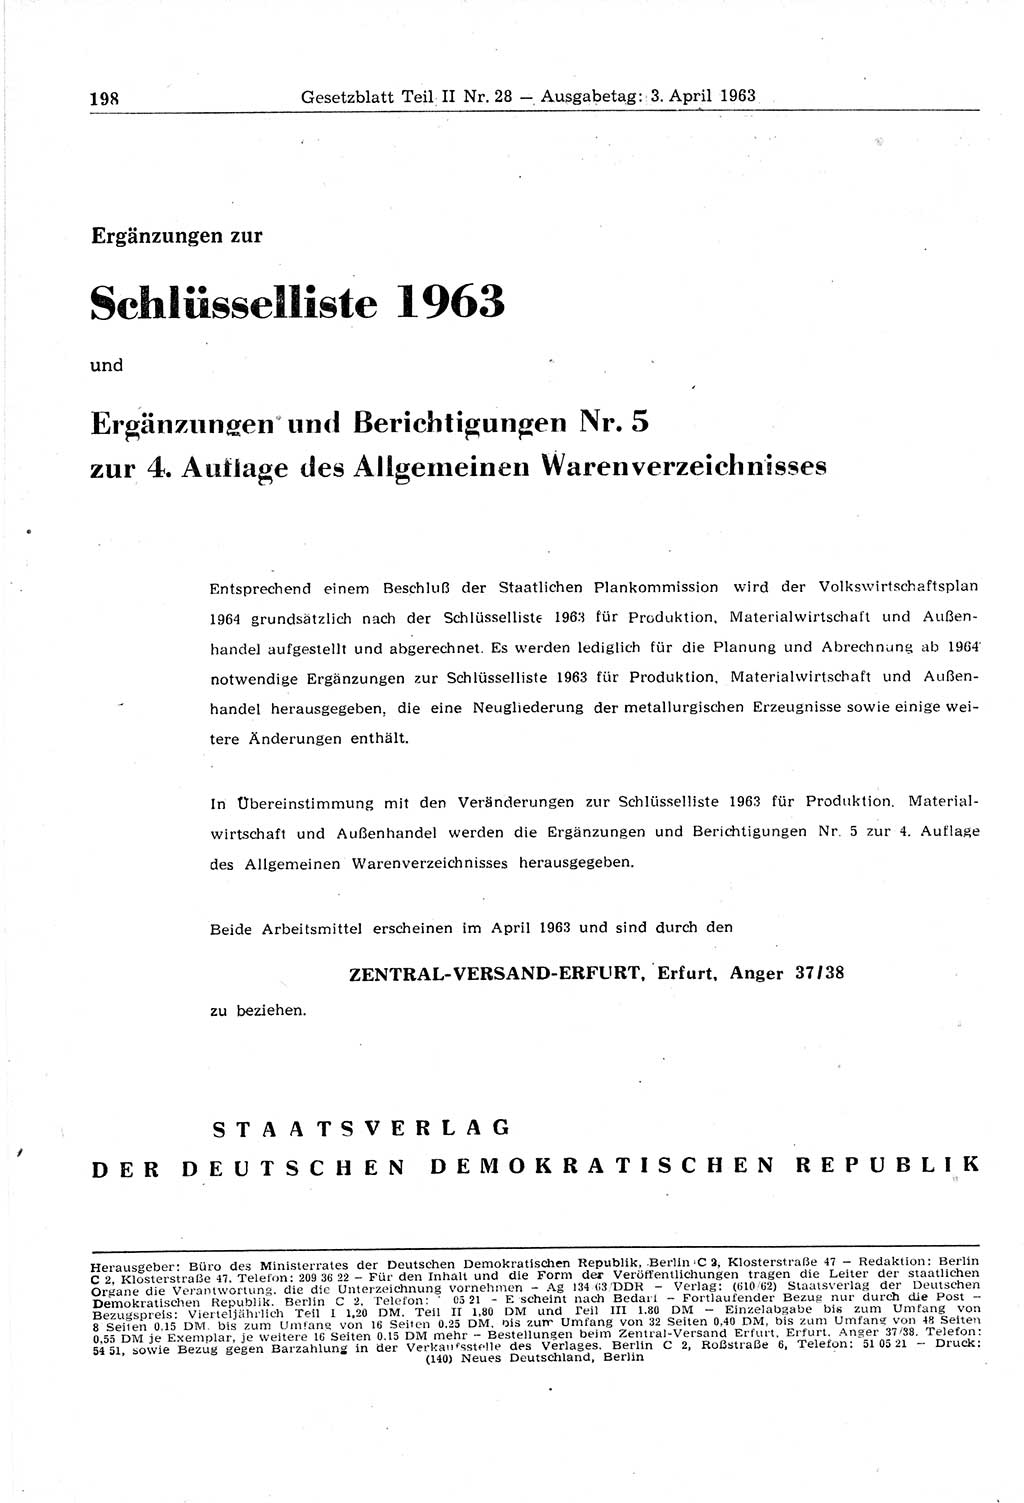 Gesetzblatt (GBl.) der Deutschen Demokratischen Republik (DDR) Teil ⅠⅠ 1963, Seite 198 (GBl. DDR ⅠⅠ 1963, S. 198)